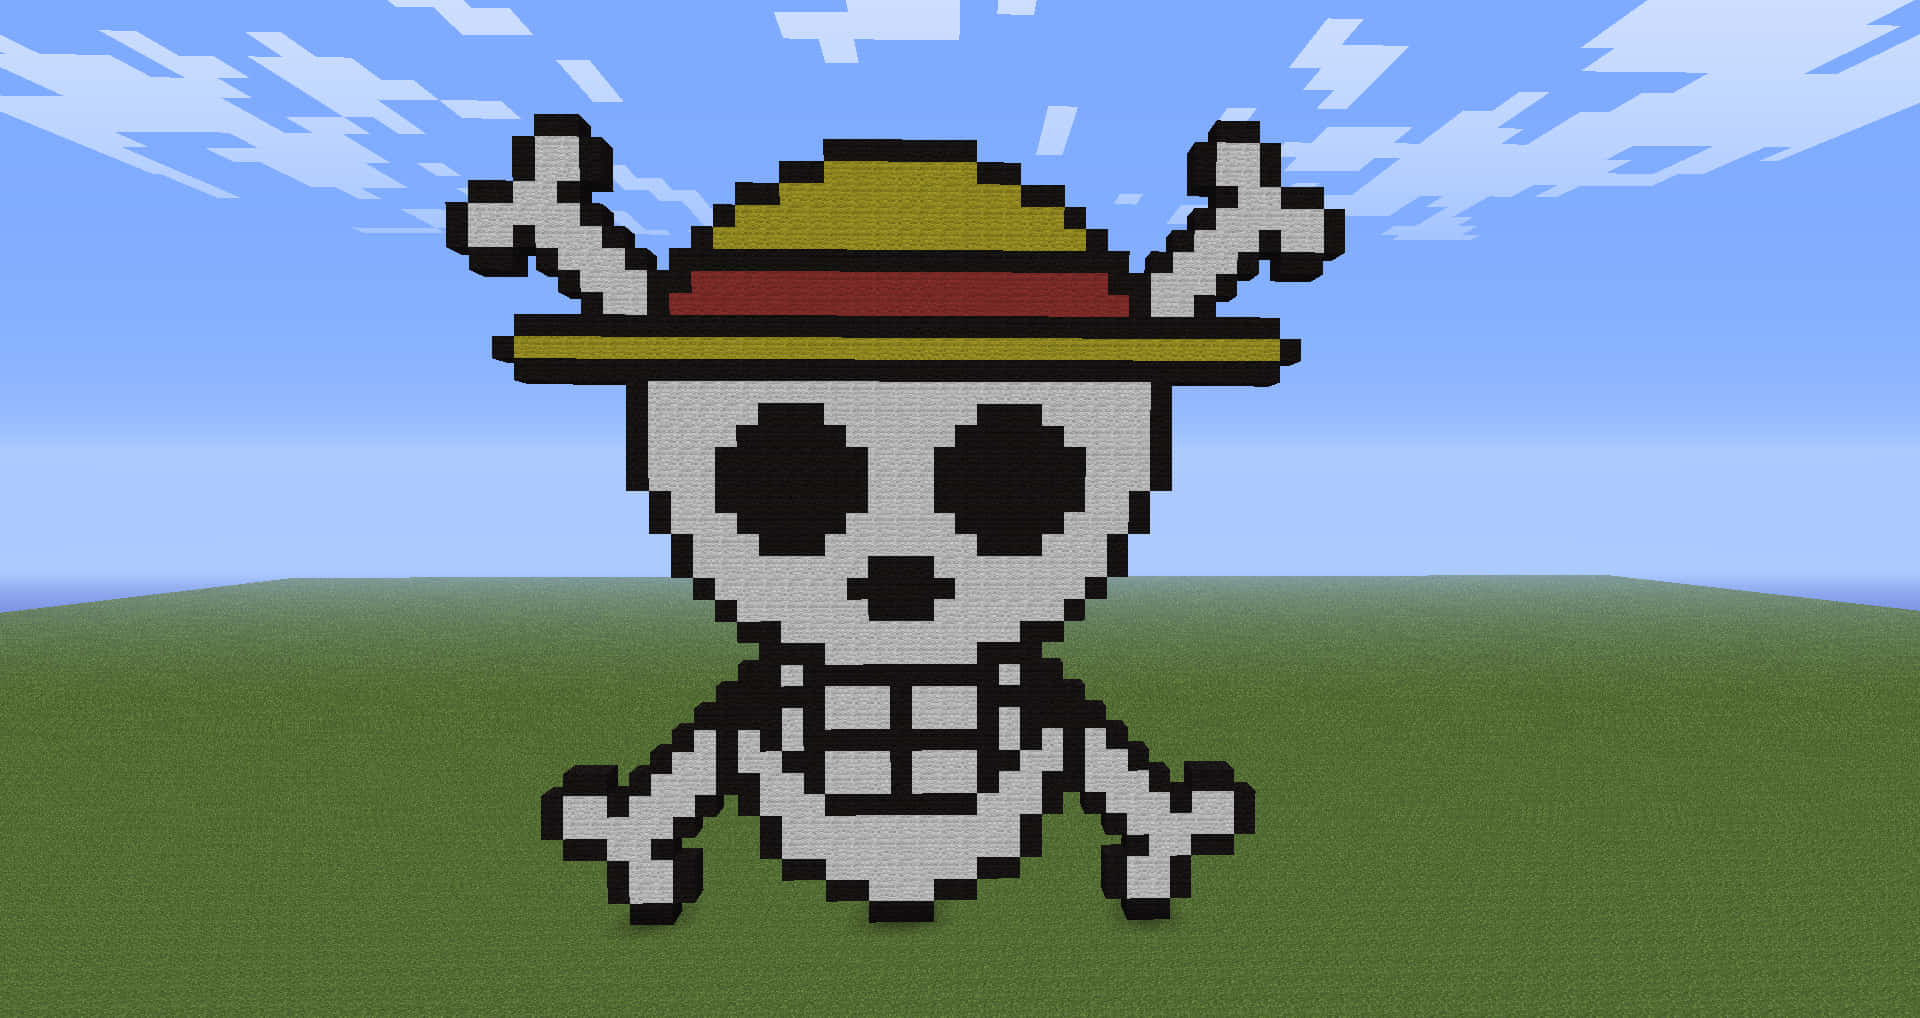 Et skelet iført en hat og en hat Wallpaper